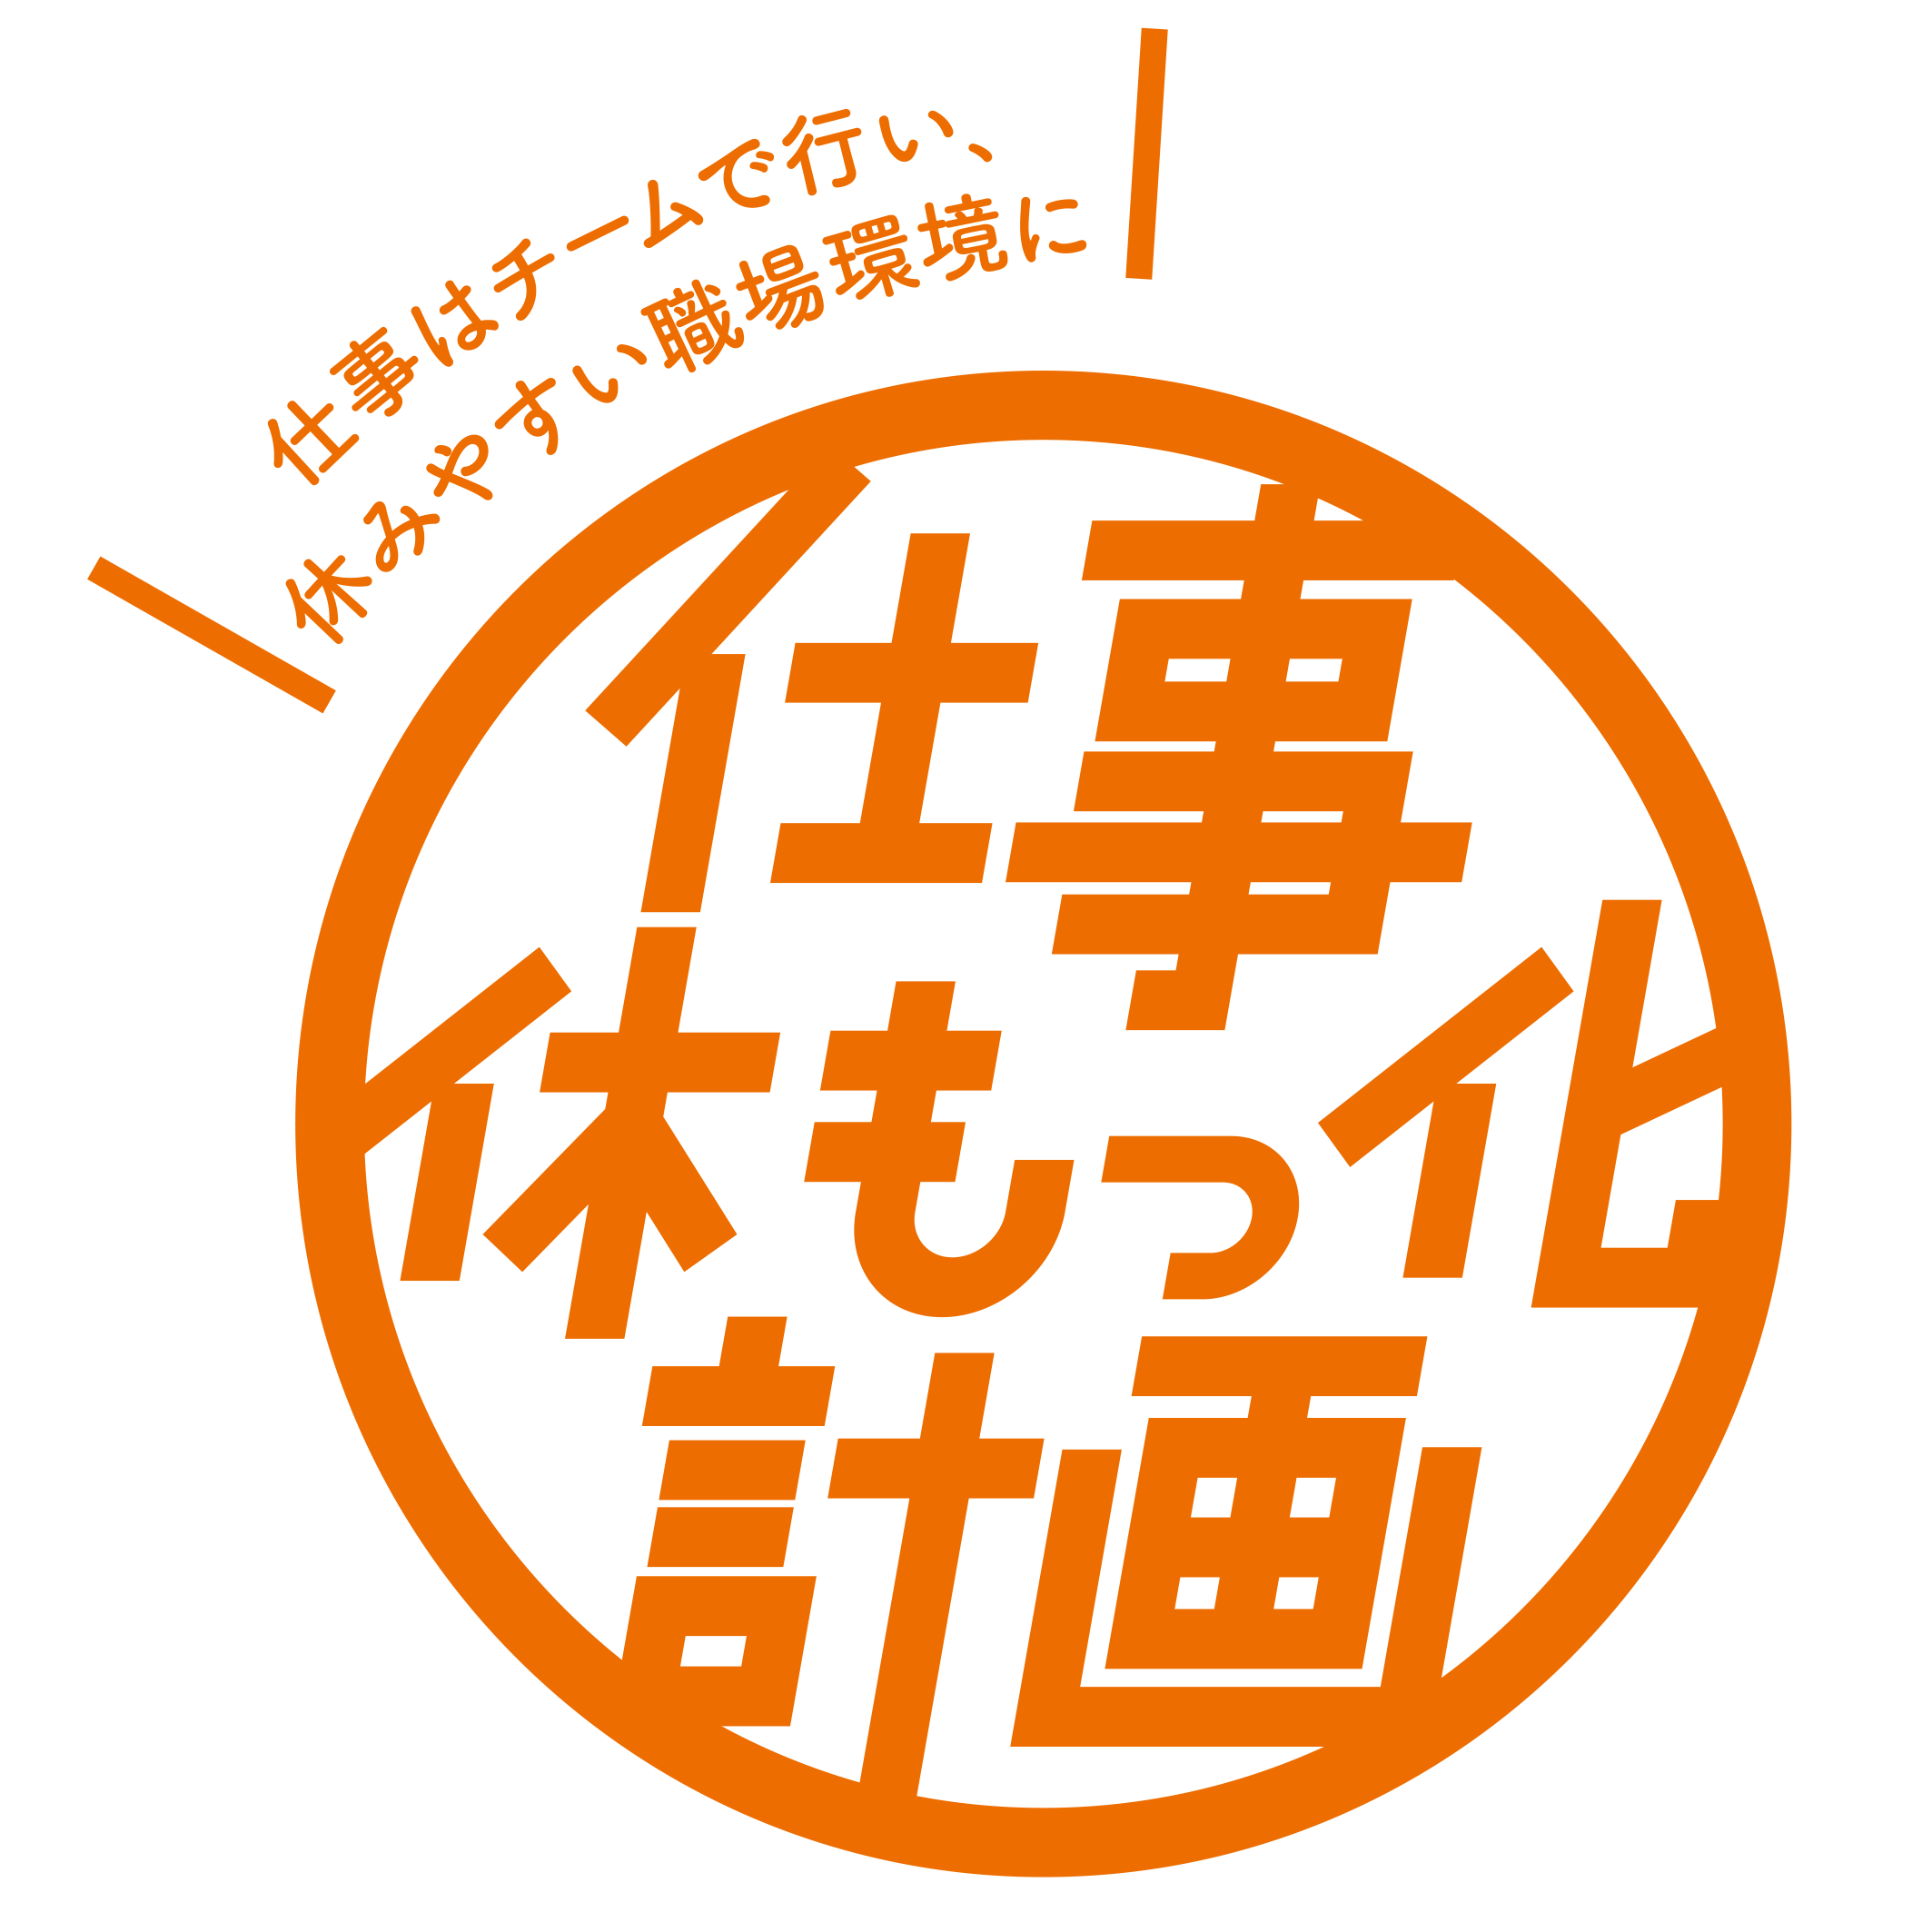 休もっ化計画2019秋のロゴ